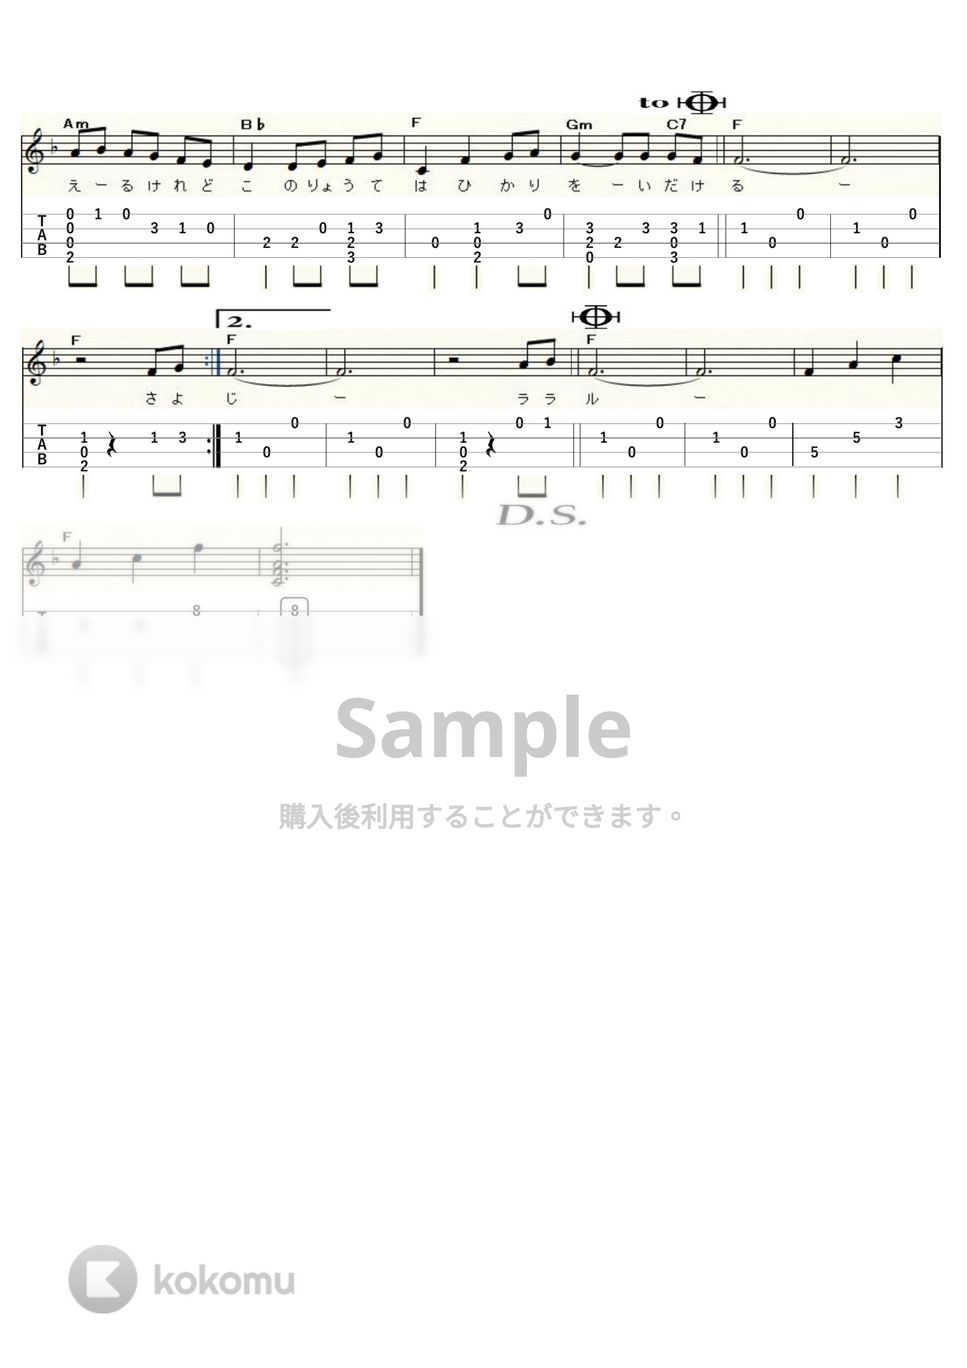 木村弓 - いつも何度でも～千と千尋の神隠し～ (ｳｸﾚﾚｿﾛ / High-G,Low-G / 初～中級) by ukulelepapa